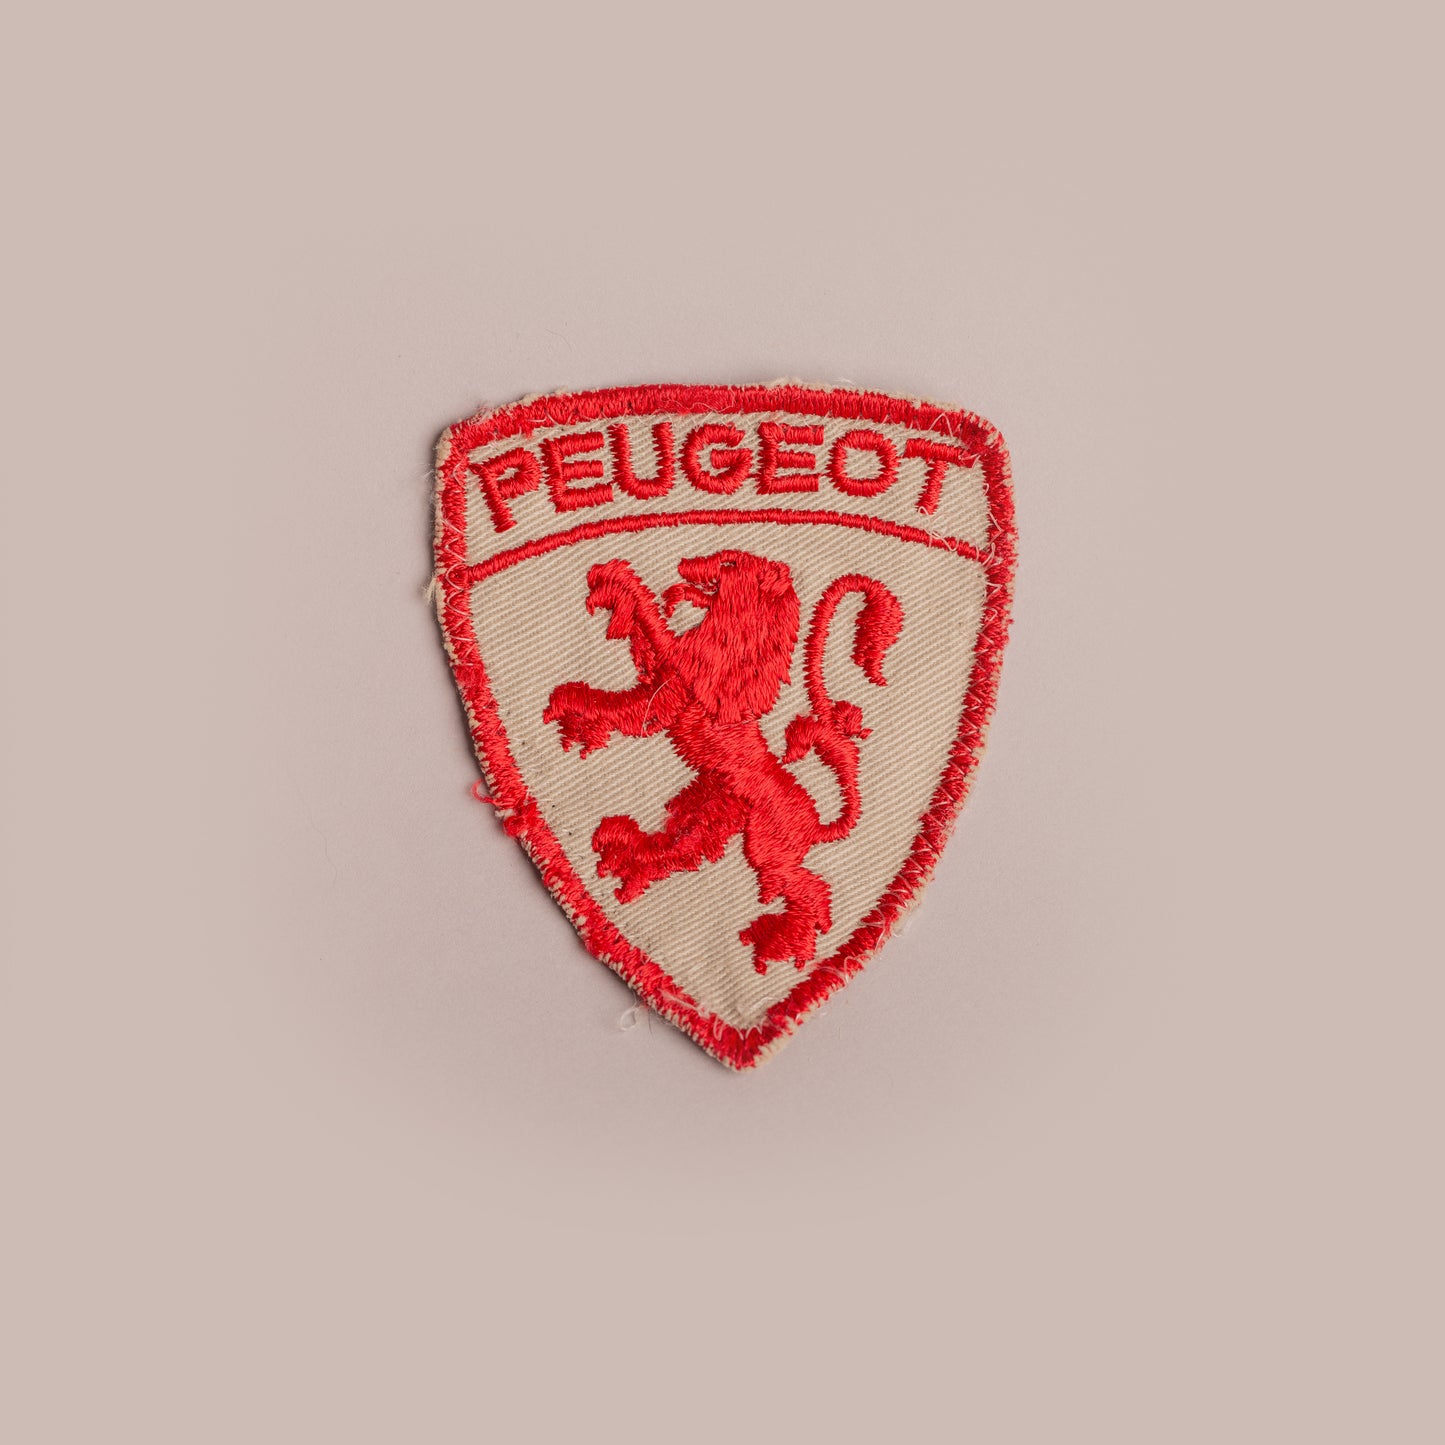 Vintage Patch - Peugeot